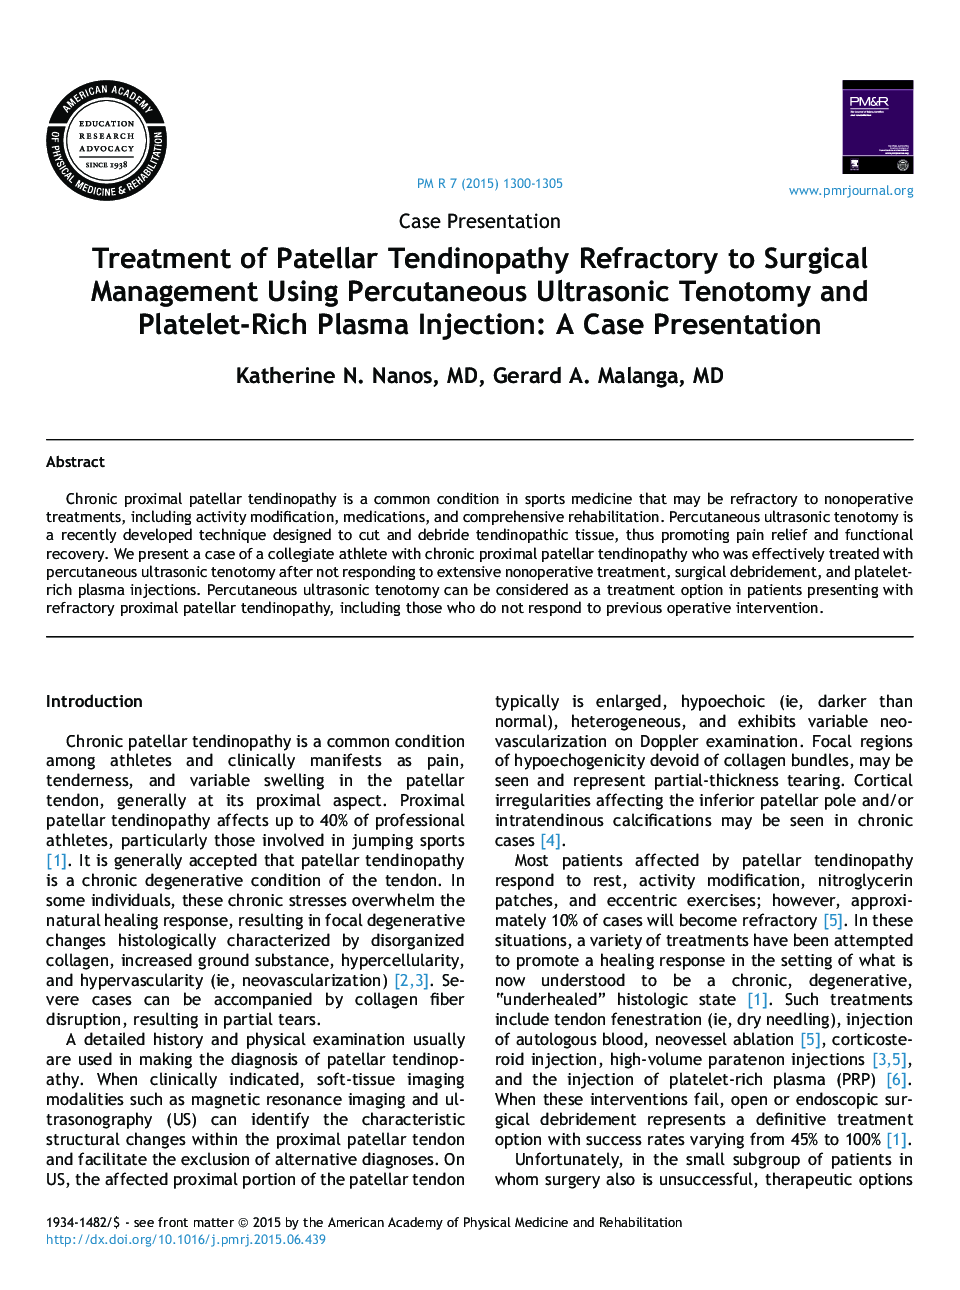 پیشگیری از حوادث تاندونوپاتی پاتلا مرطوب به مدیریت جراحی با استفاده از تنوتومی التراسونیک پوستی و تزریق پلاسما غنی از پلاکت: ارائه مورد 